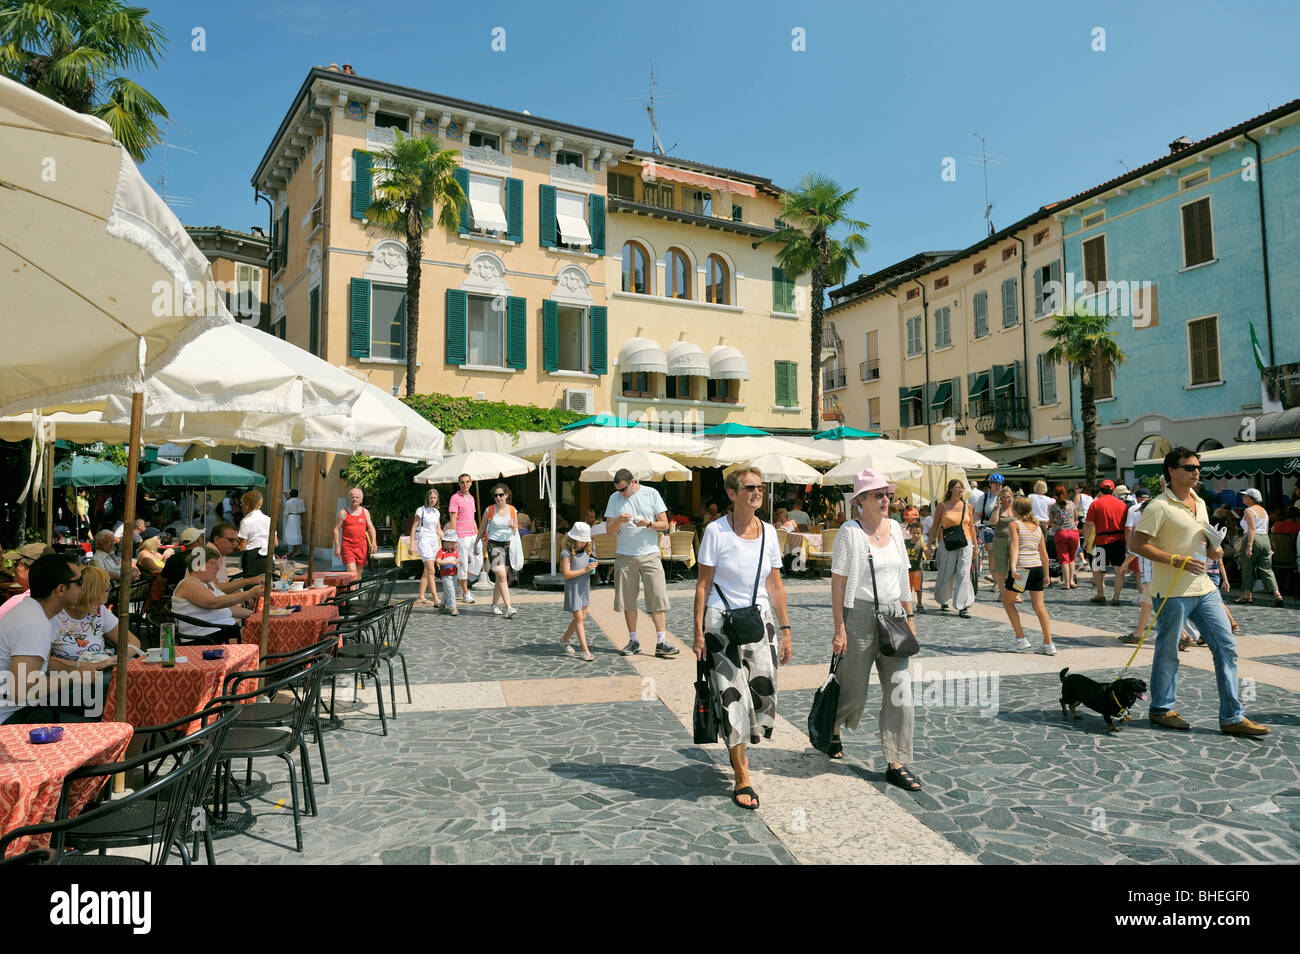 Il resort per vacanze città di Sirmione sul Lago di Garda, Lombardia, Italia. Street bar sulla Piazza Giosue Carducci. Lago di Garda. Foto Stock